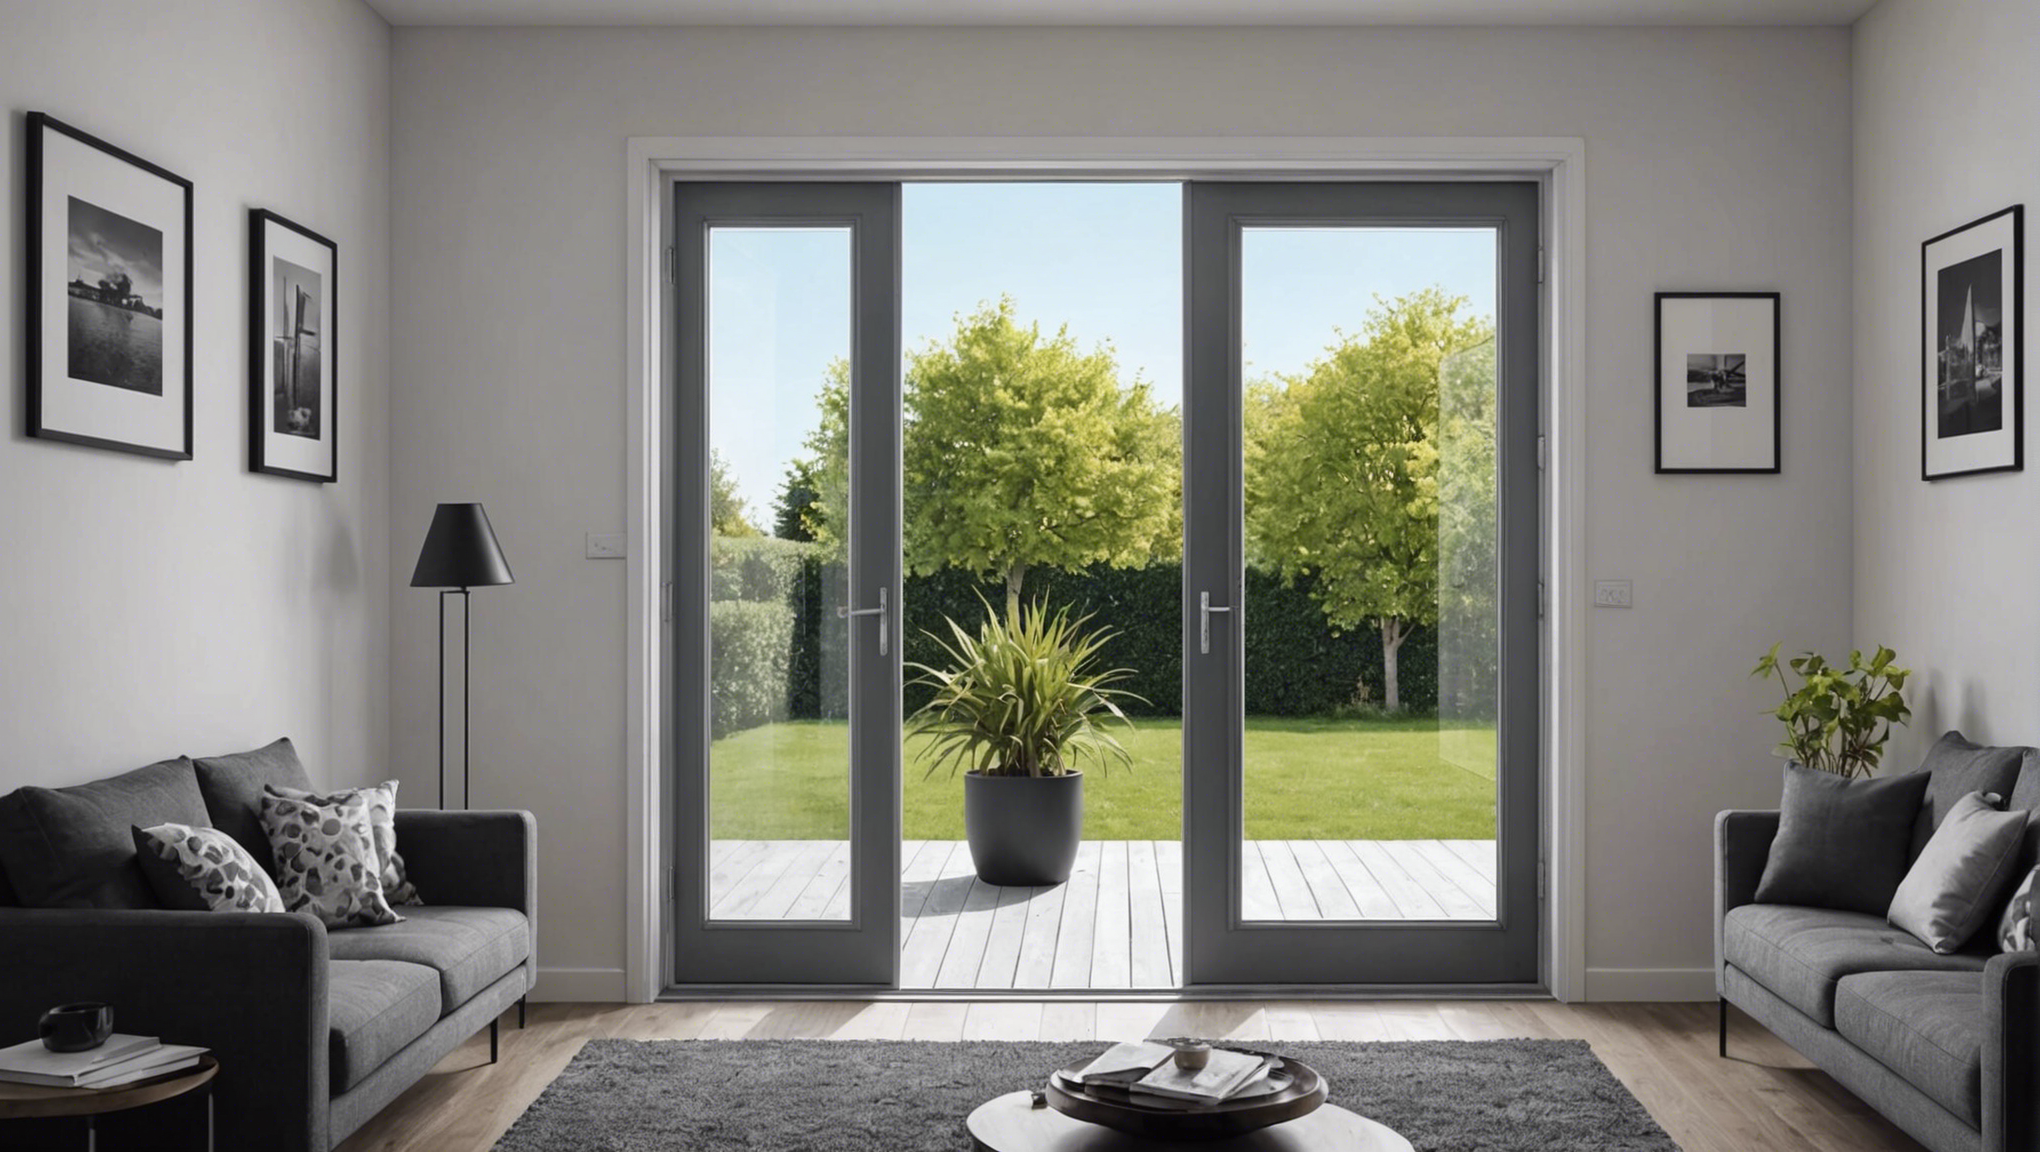 découvrez comment choisir les meilleures fenêtres et portes pour améliorer votre intérieur avec nos conseils pratiques et astuces pour un habitat plus confortable et esthétique.